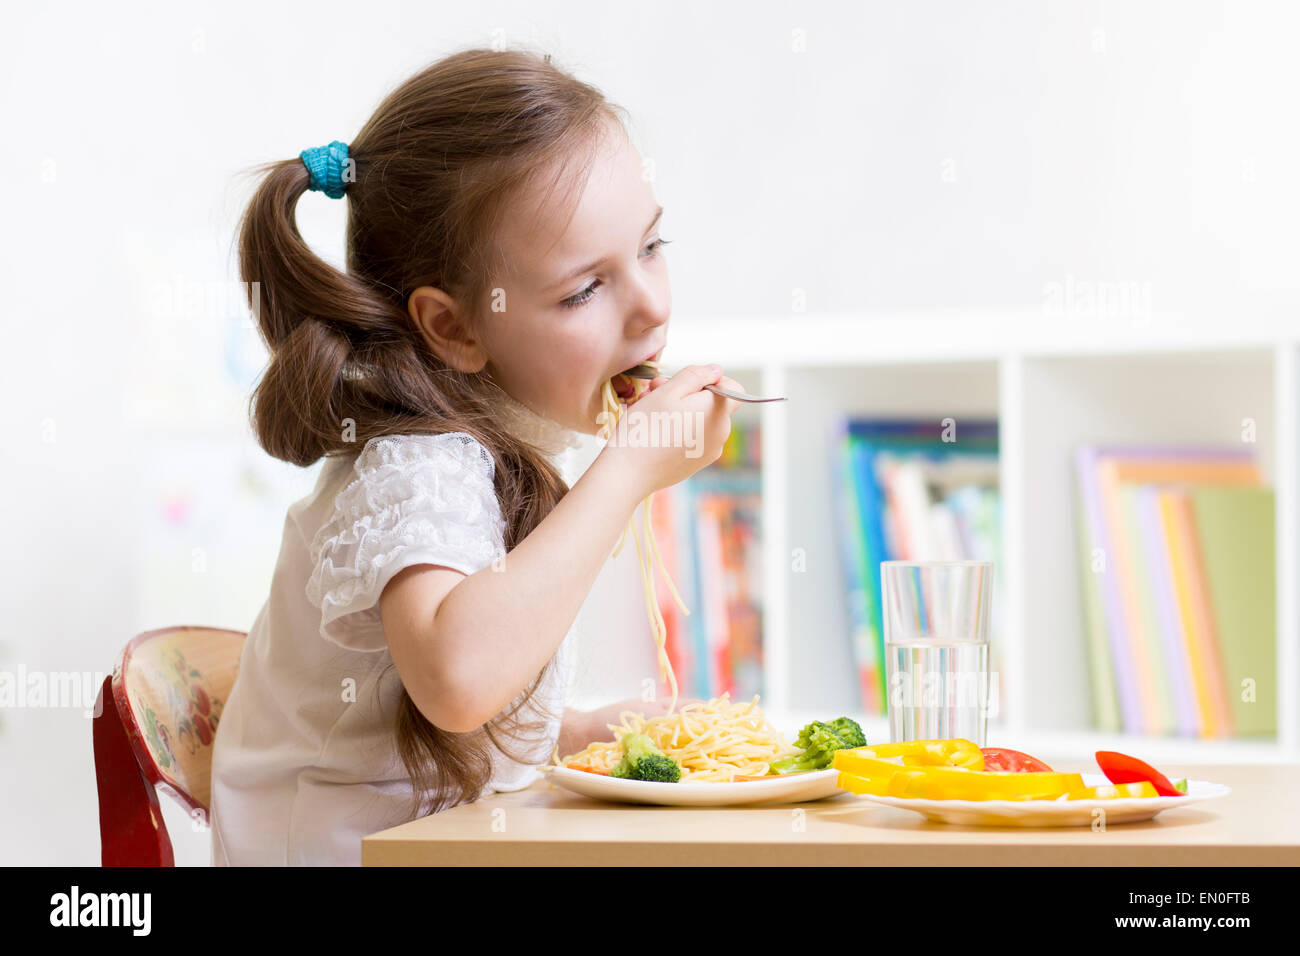 Preschooler kid ragazza di mangiare cibo sano a casa o asilo nido Foto Stock